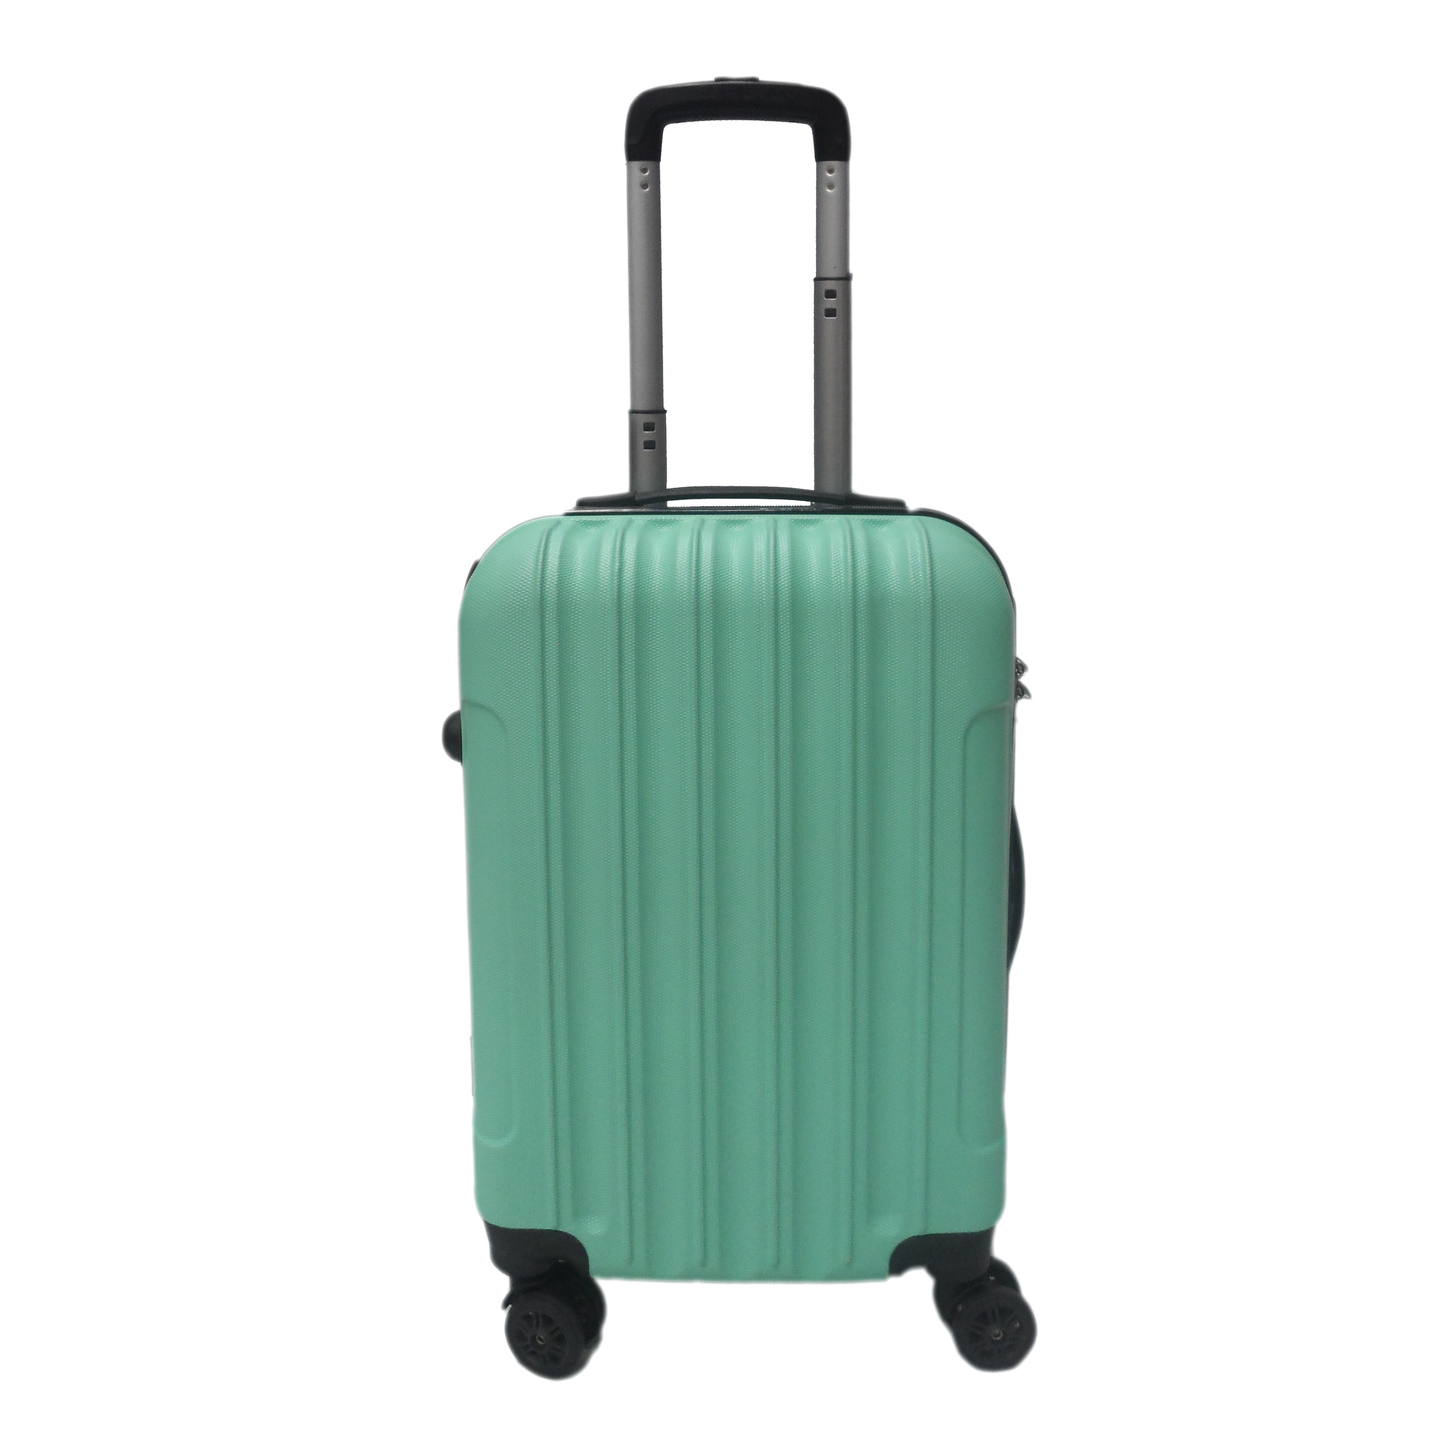 SGT-01 Elegant Hard Box Luggage - Green  20 inch